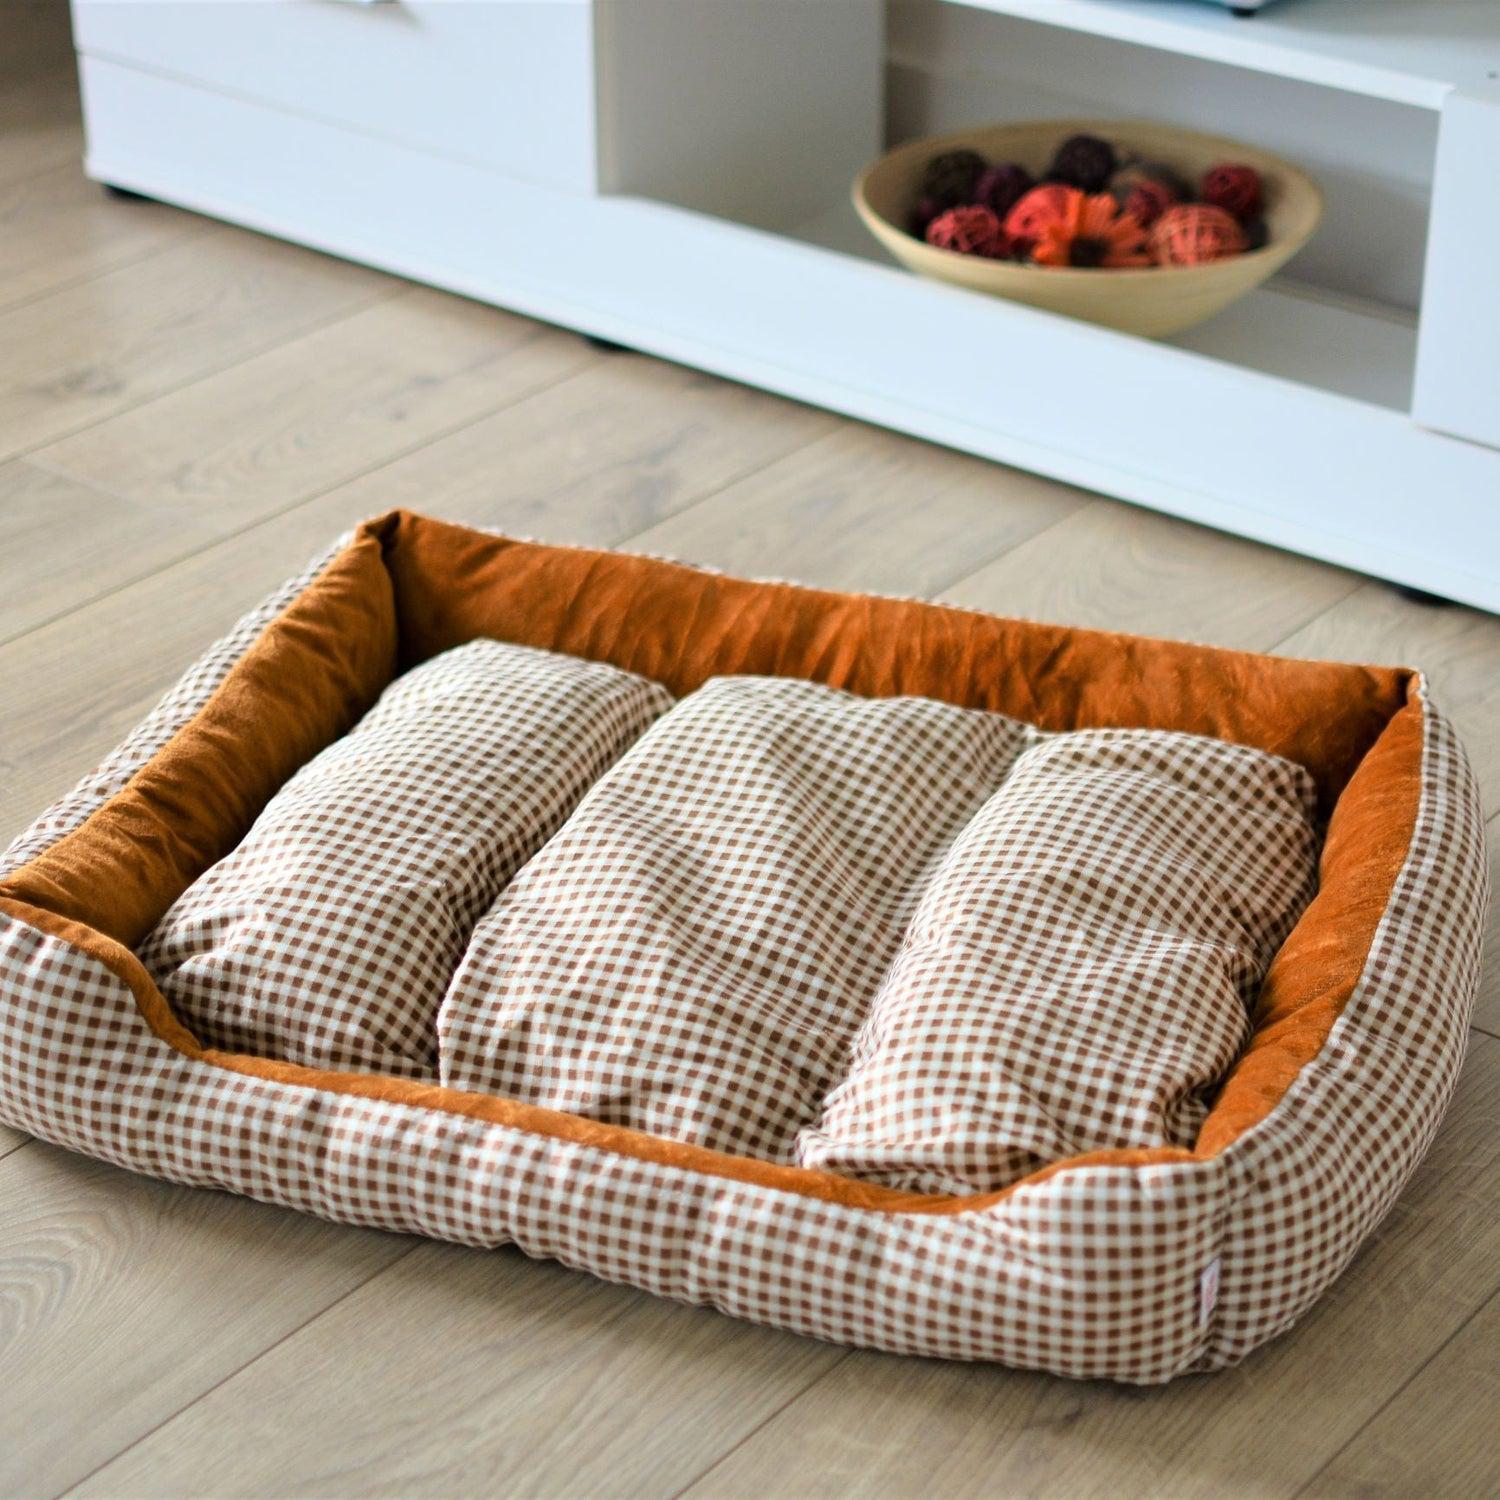 Warm Soft Comfy Dog Bed - Coffee